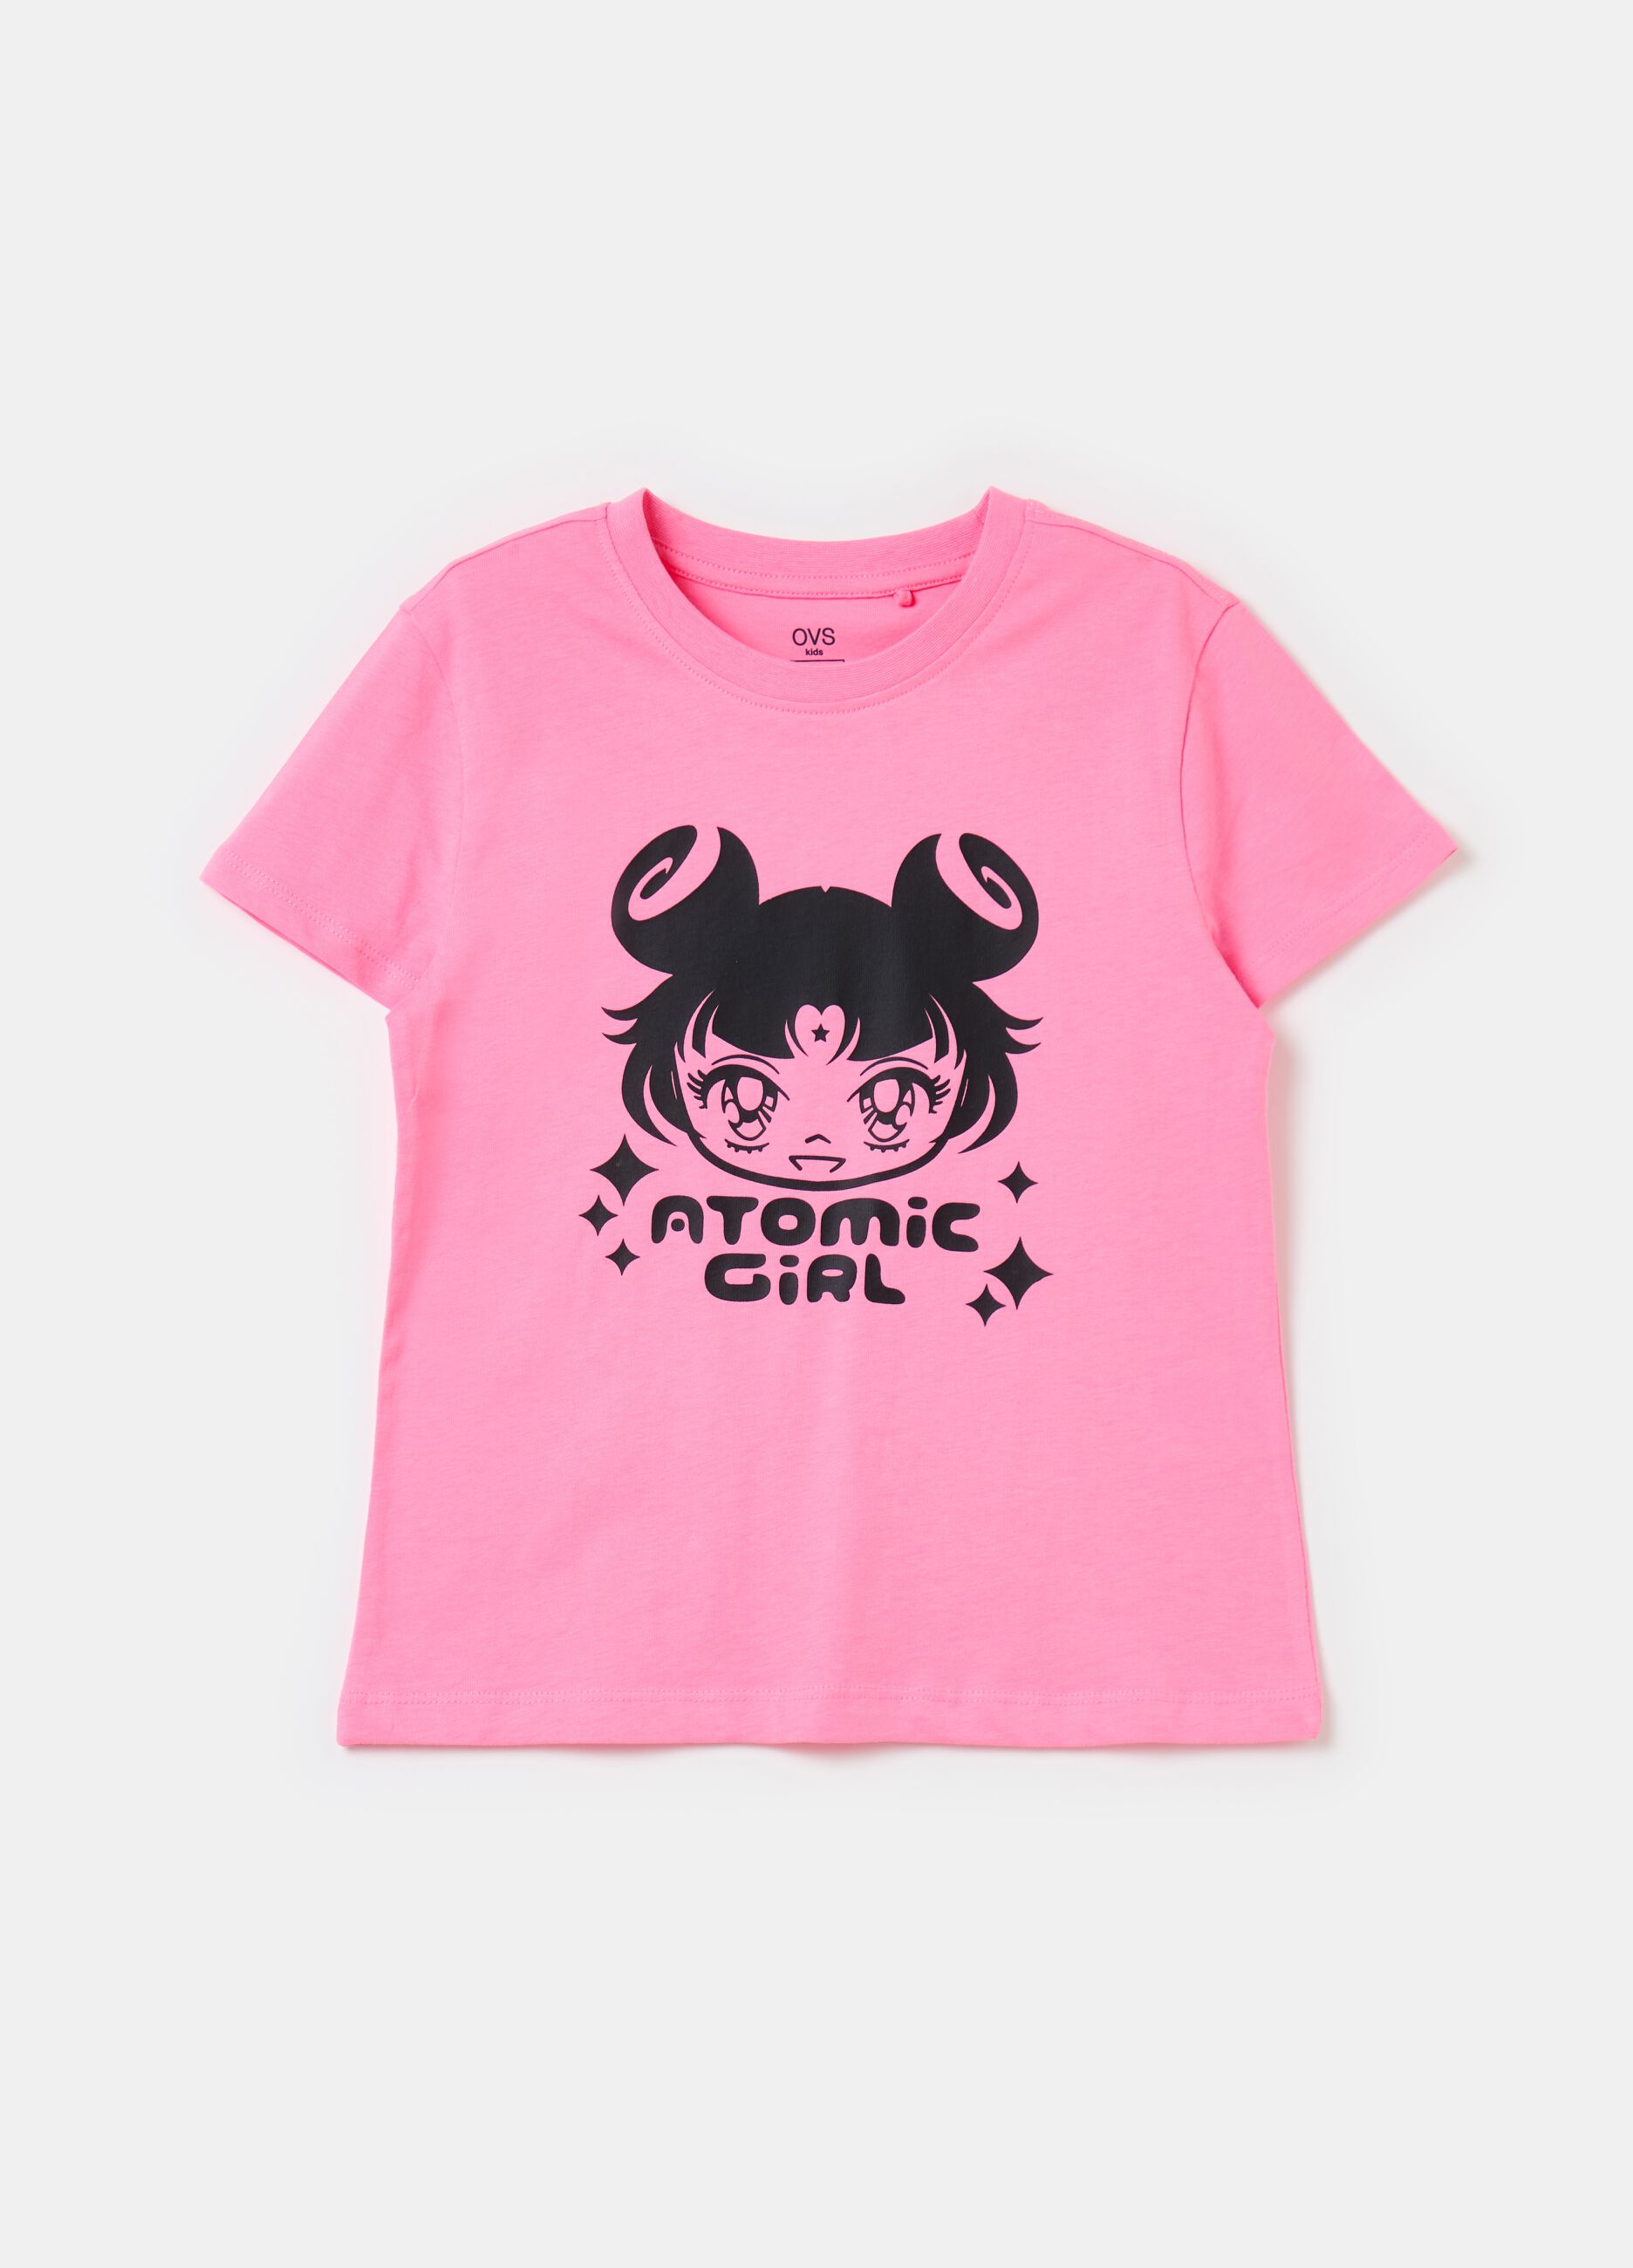 T-shirt con stampa Atomic Girl